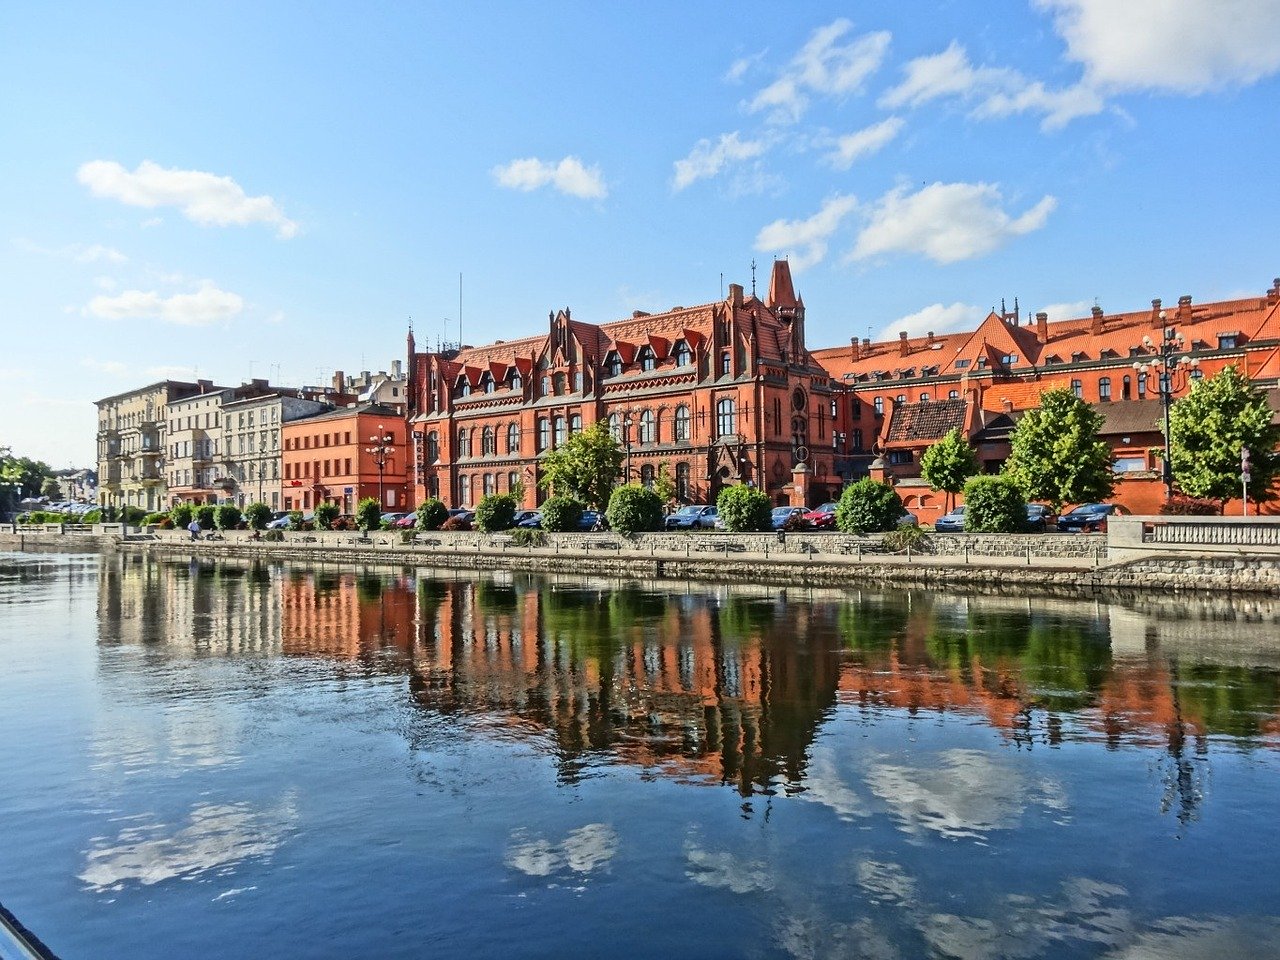 Co warto zobaczyć we Wrocławiu – mieście spotkań?